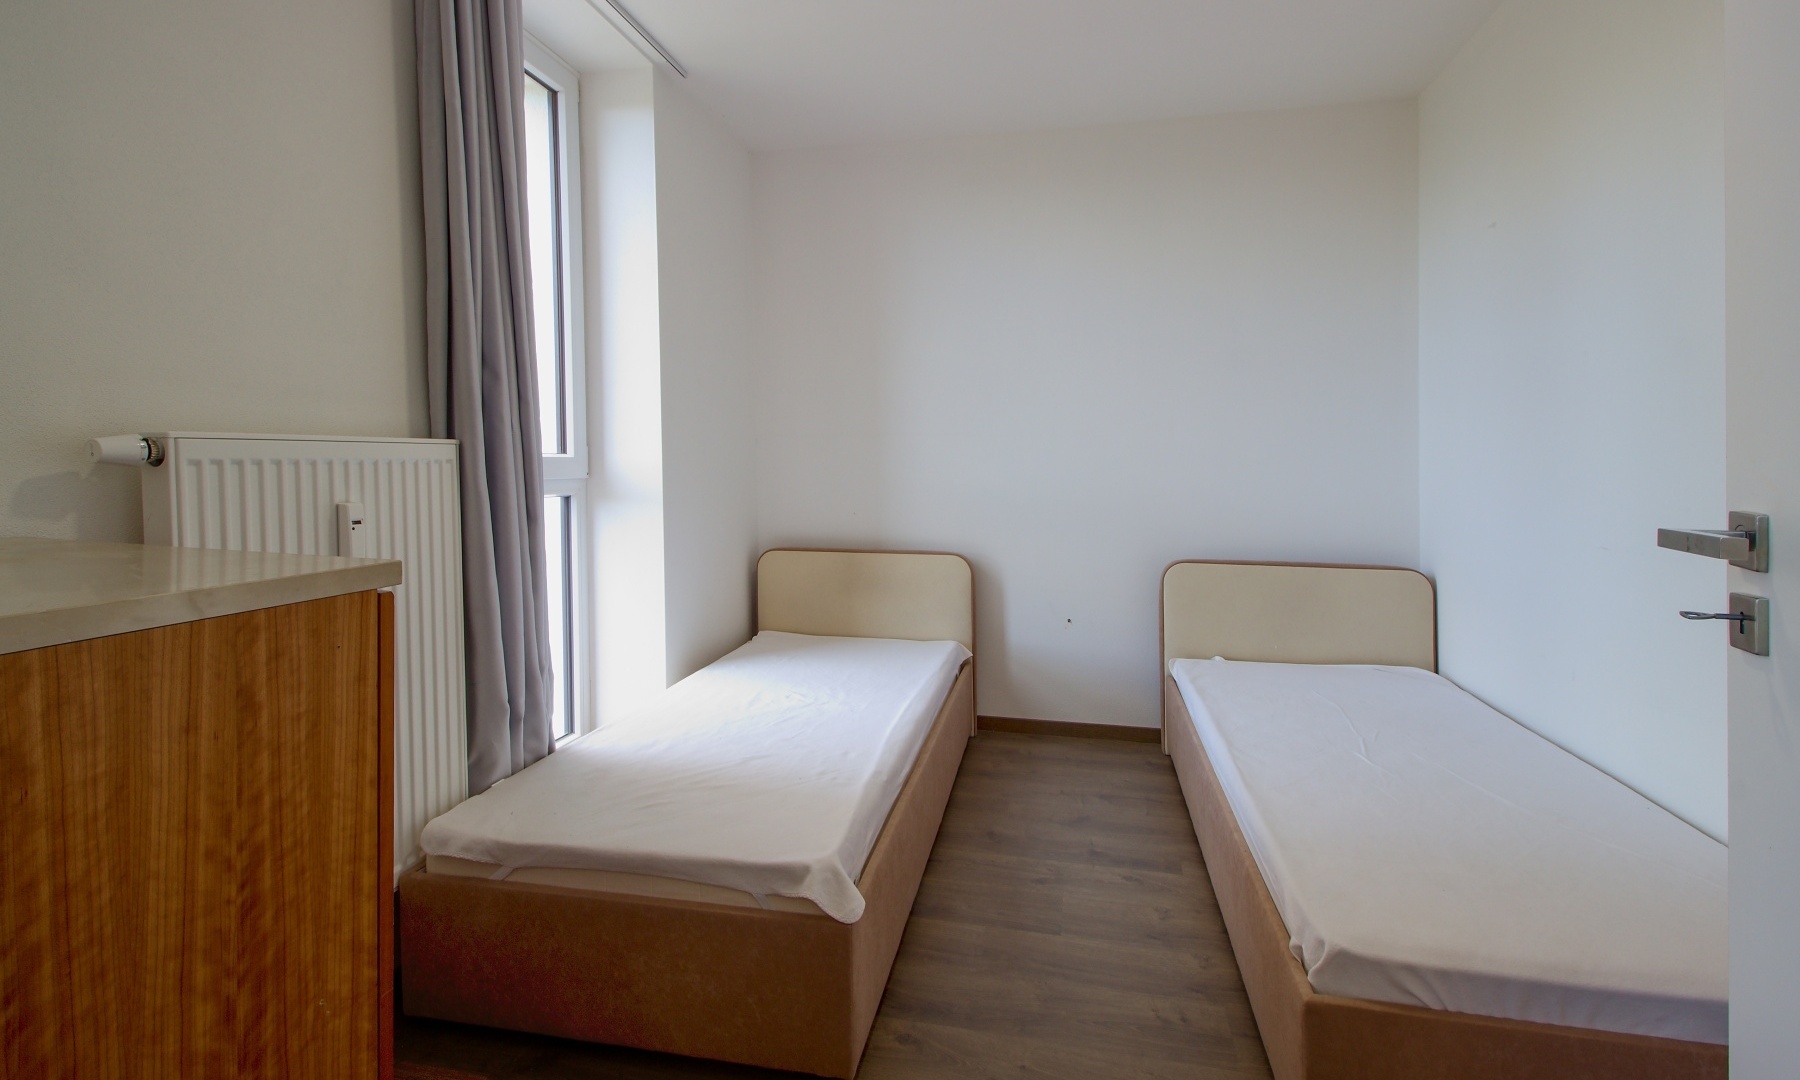 Pronájem pokoje v prostorném bytě 4+1, o výměře 9 m² - Plzeň - Skvrňany